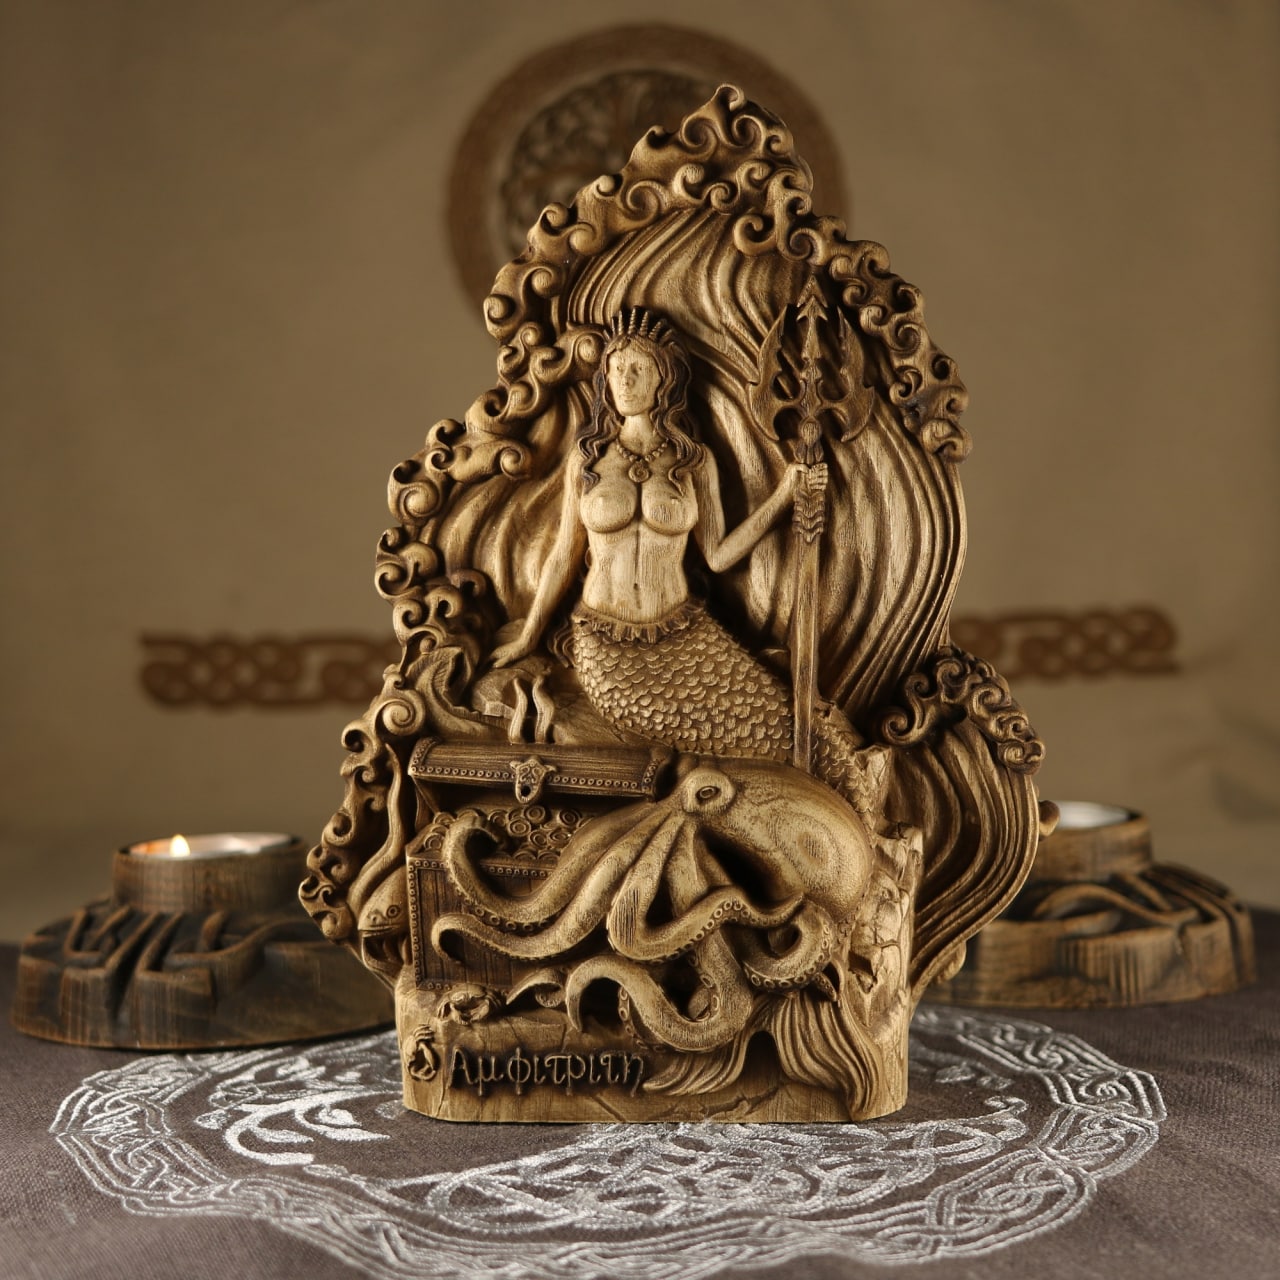 Wooden Kraken Sculpture - Sea Goddess Statue